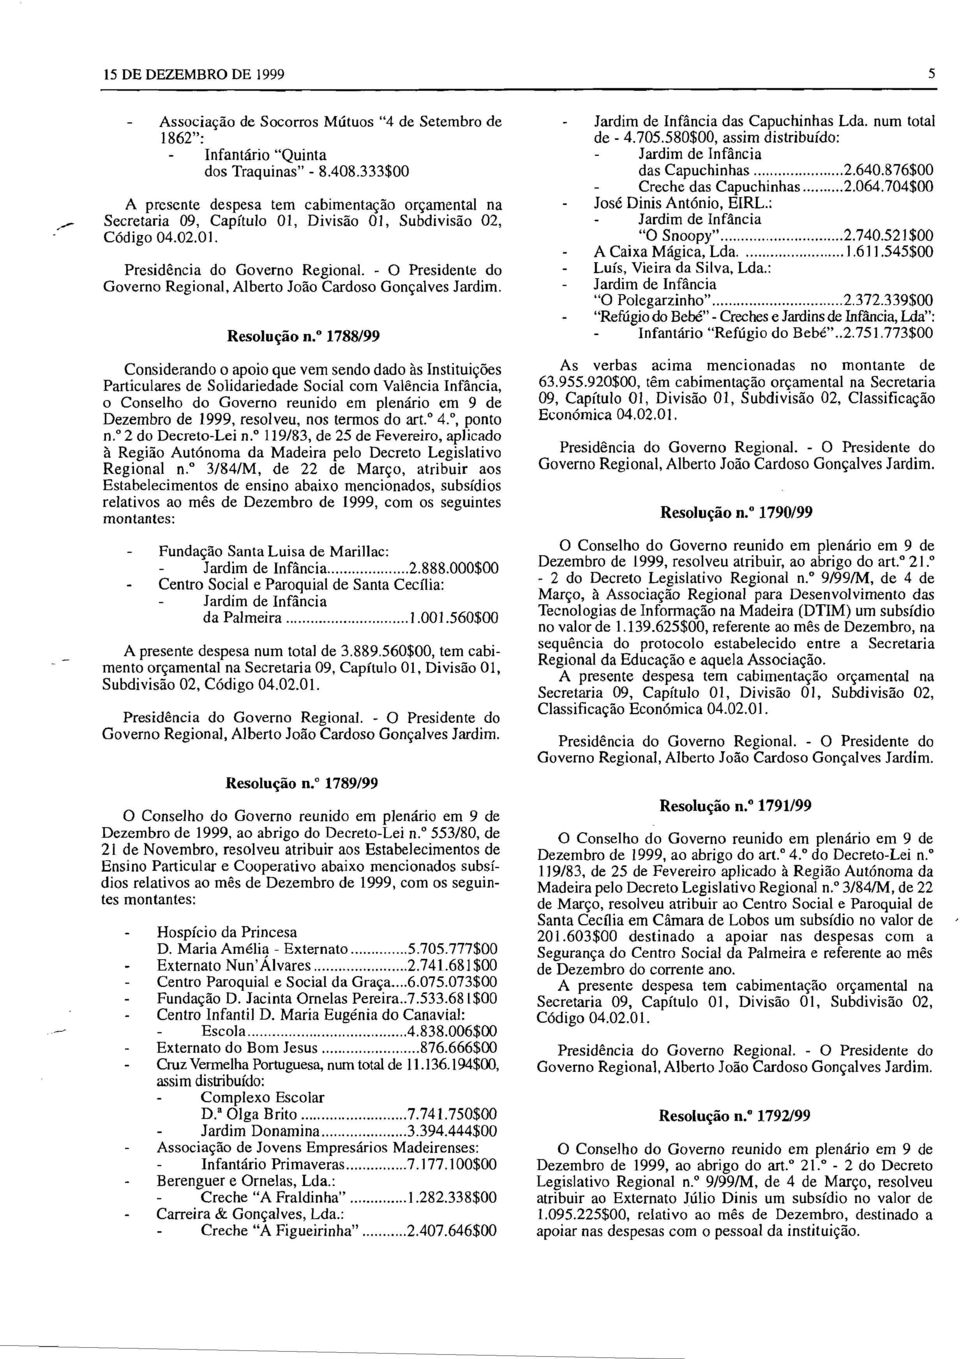 4., ponto n." 2 do Decreto-Lei n." 119/83, de 25 de Fevereiro, aplicado à Região Autónoma da Madeira pelo Decreto Legislativo Regional n.